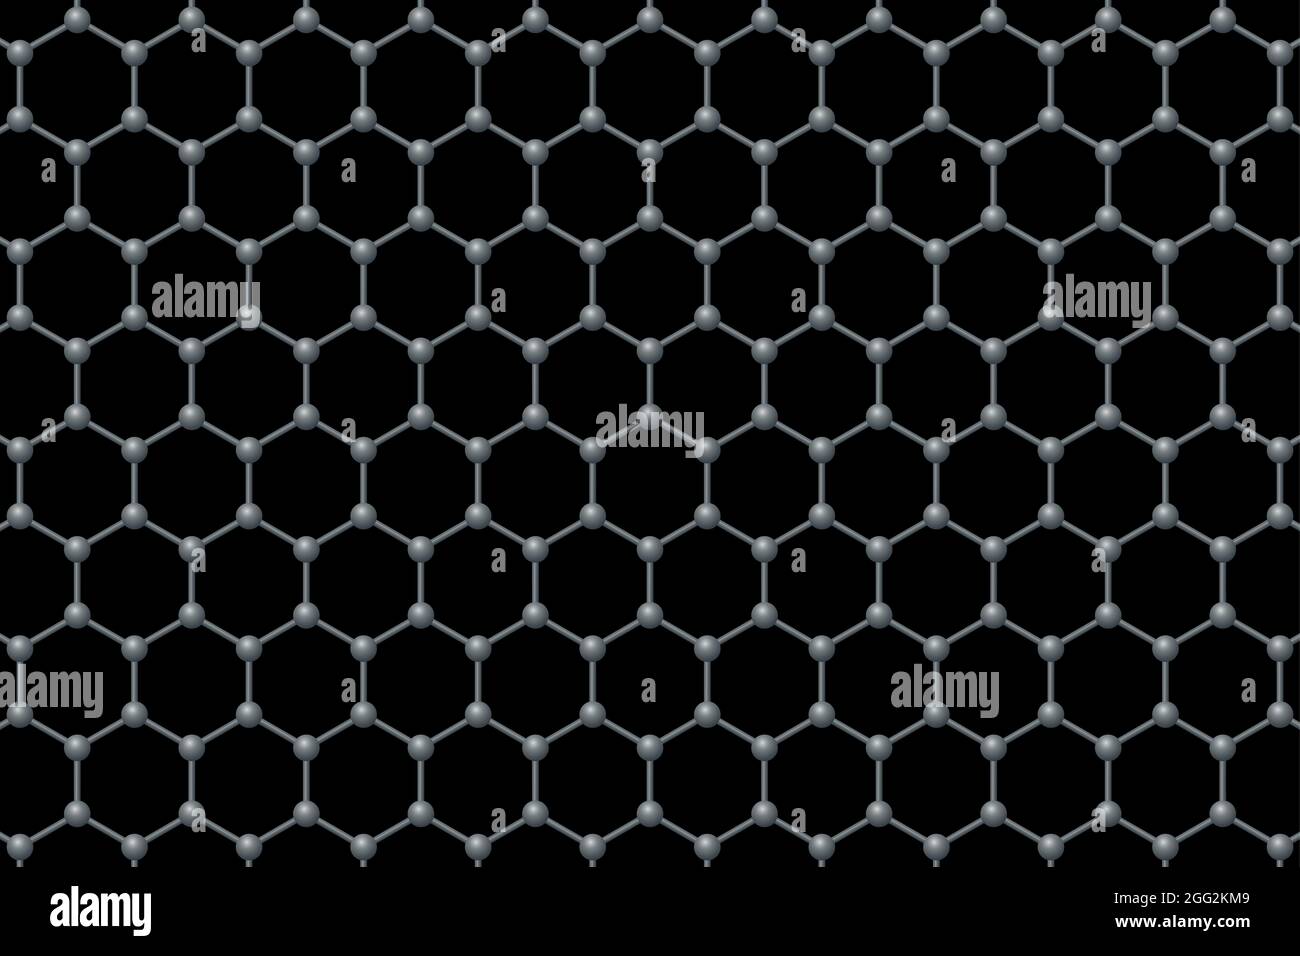 Graphen einschichtiger Hintergrund. Dreidimensionale schematische molekulare Struktur von Graphen. Kohlenstoffatome in Wabengitter angeordnet. Stockfoto